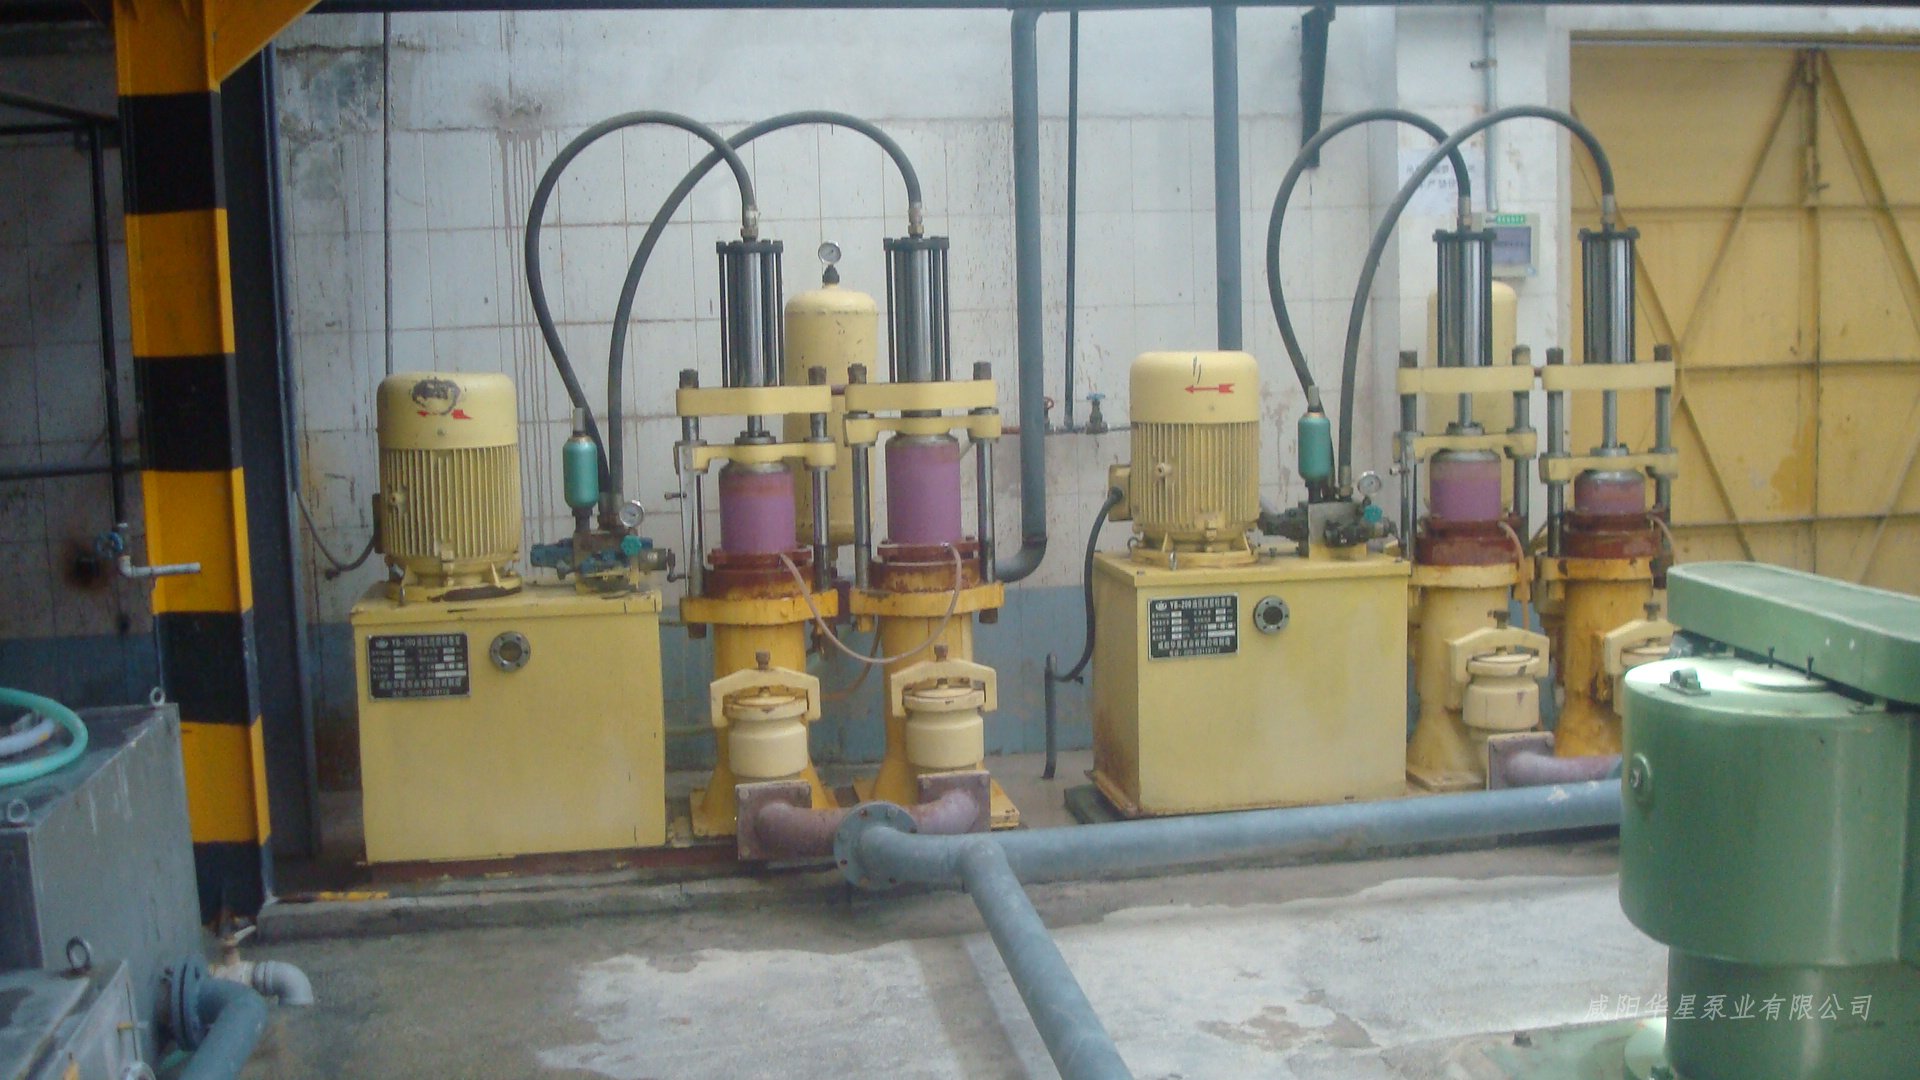 华星柱塞泵和华星压滤机在电磁厂使用现场图片